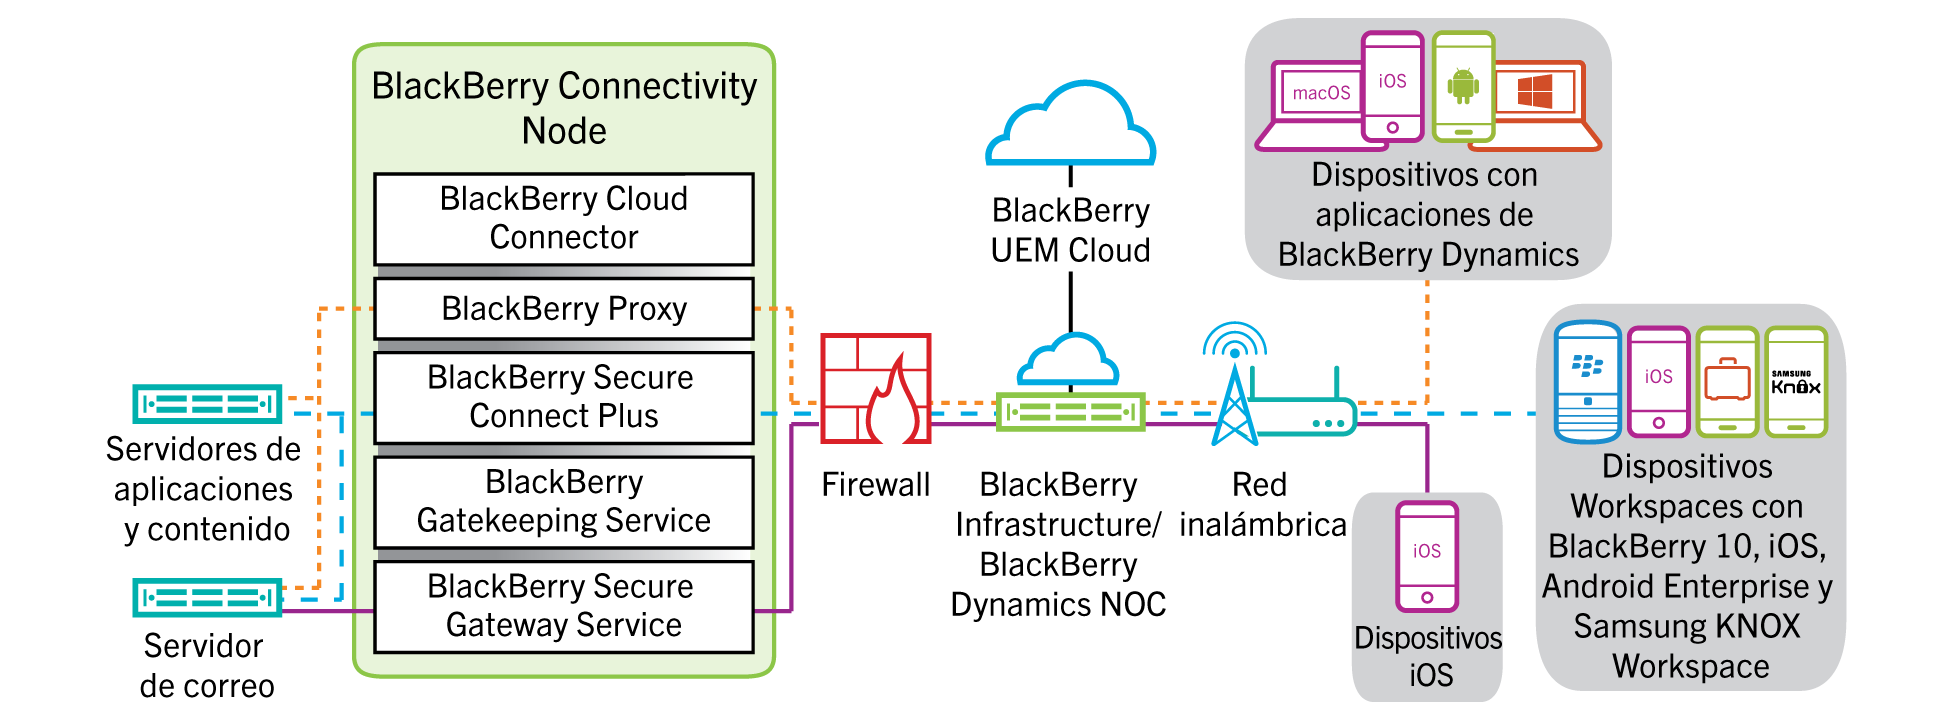 Este diagrama muestra posibles rutas de datos hacia y desde los dispositivos a través de BlackBerry Infrastructure